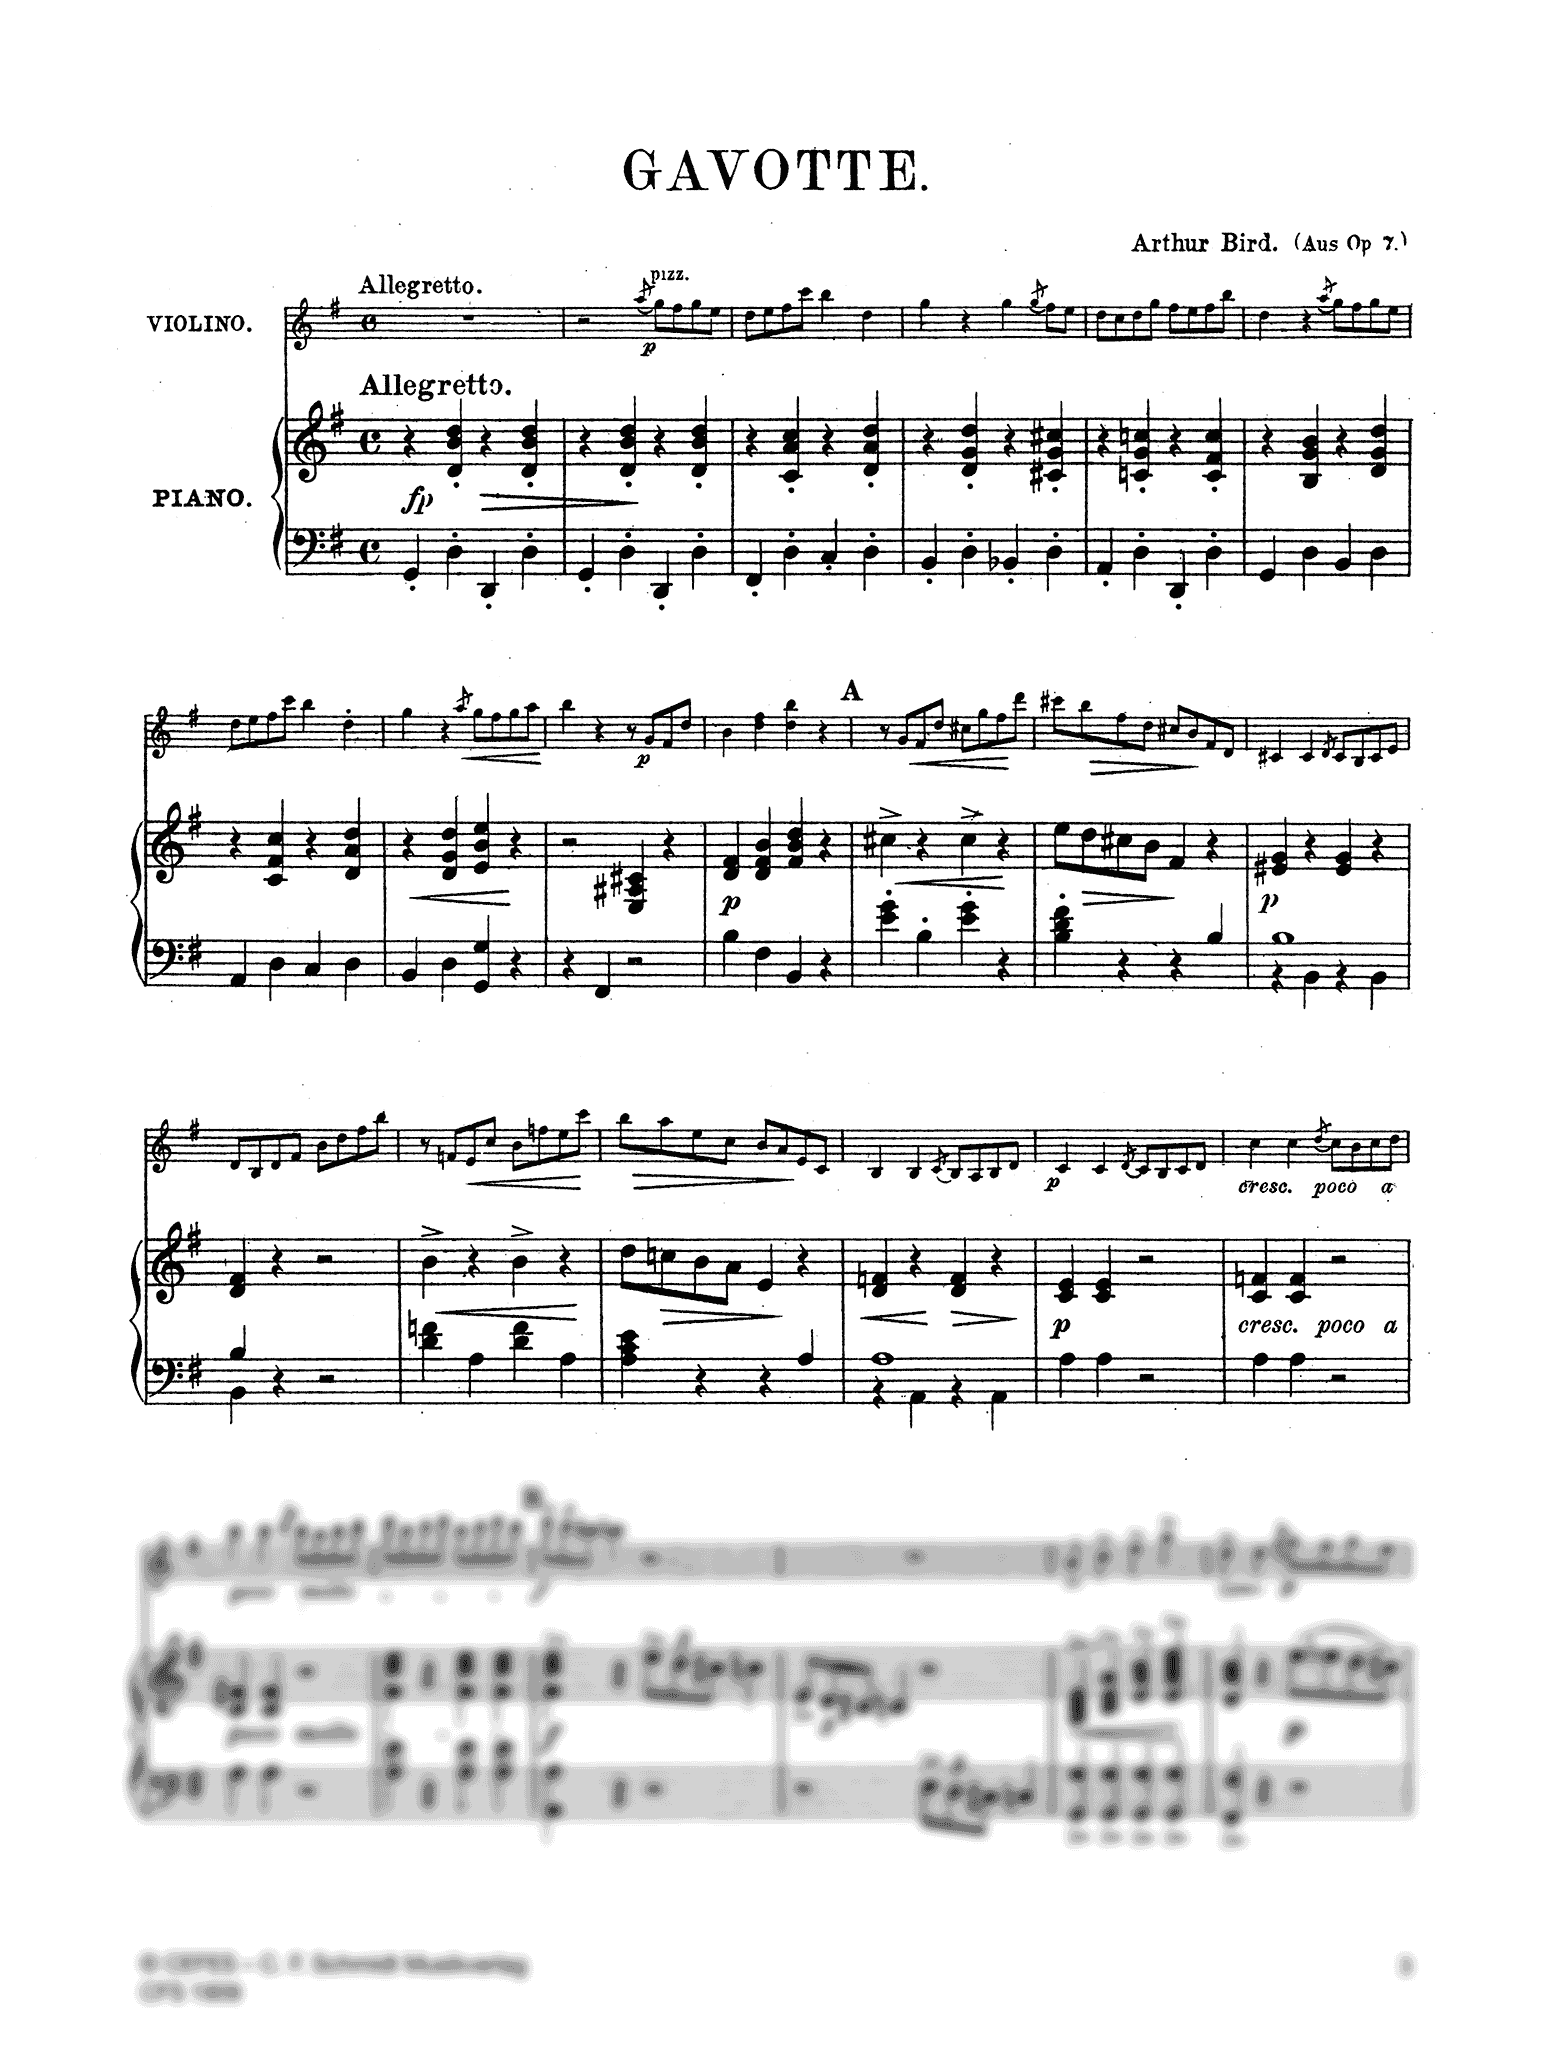 Arthur Bird Gavotte Op. 7